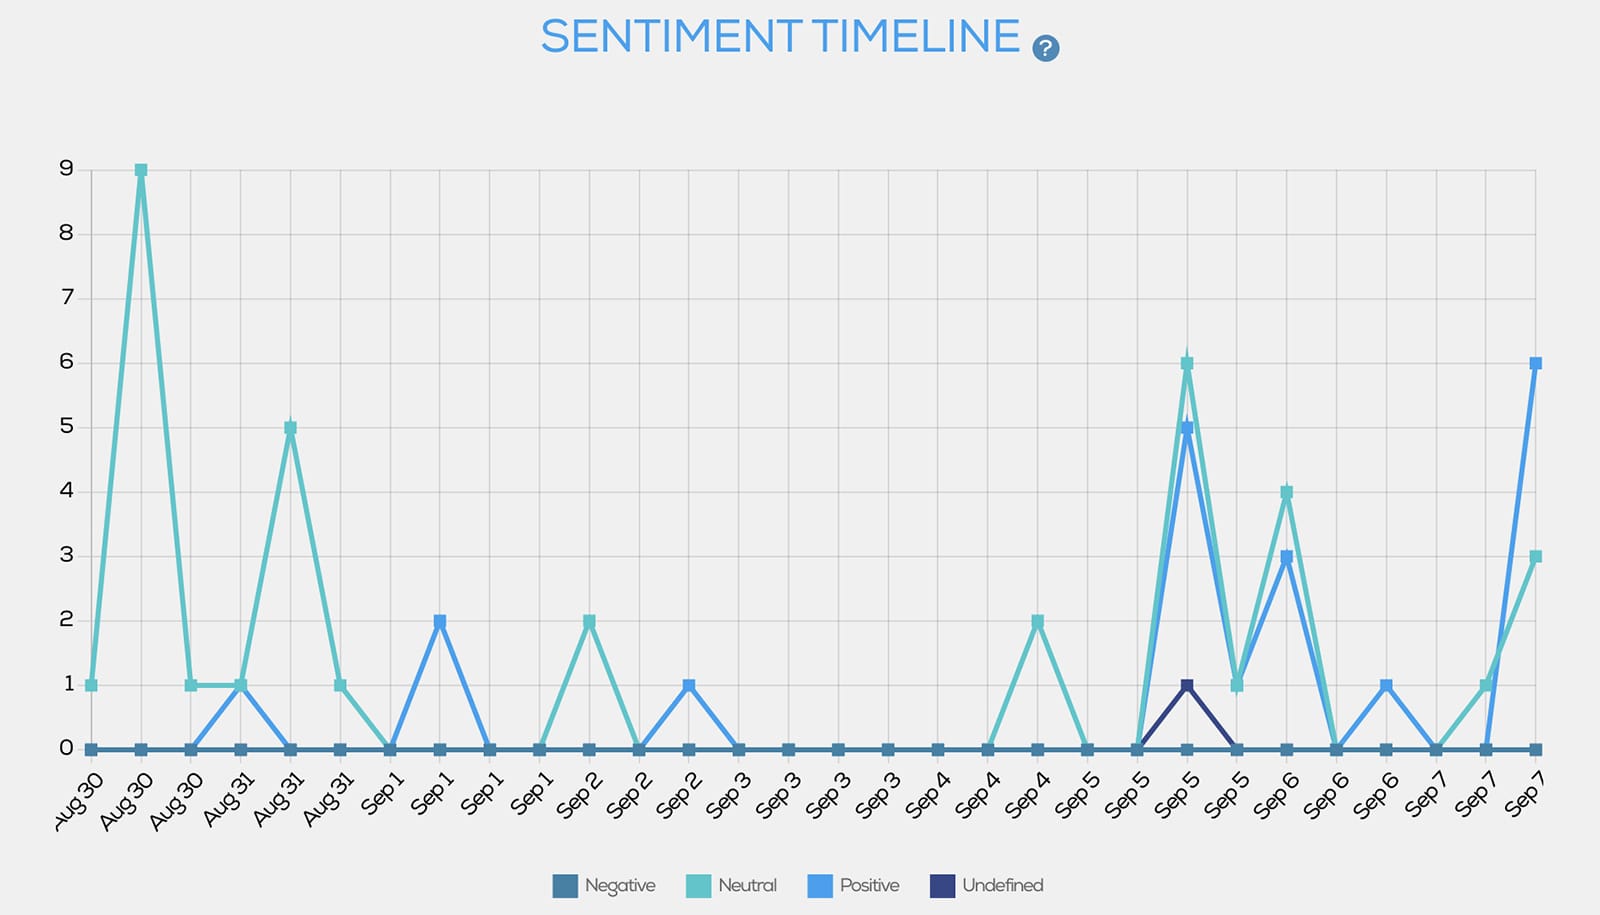 Tweet Binder - Twitter sentiment analysis